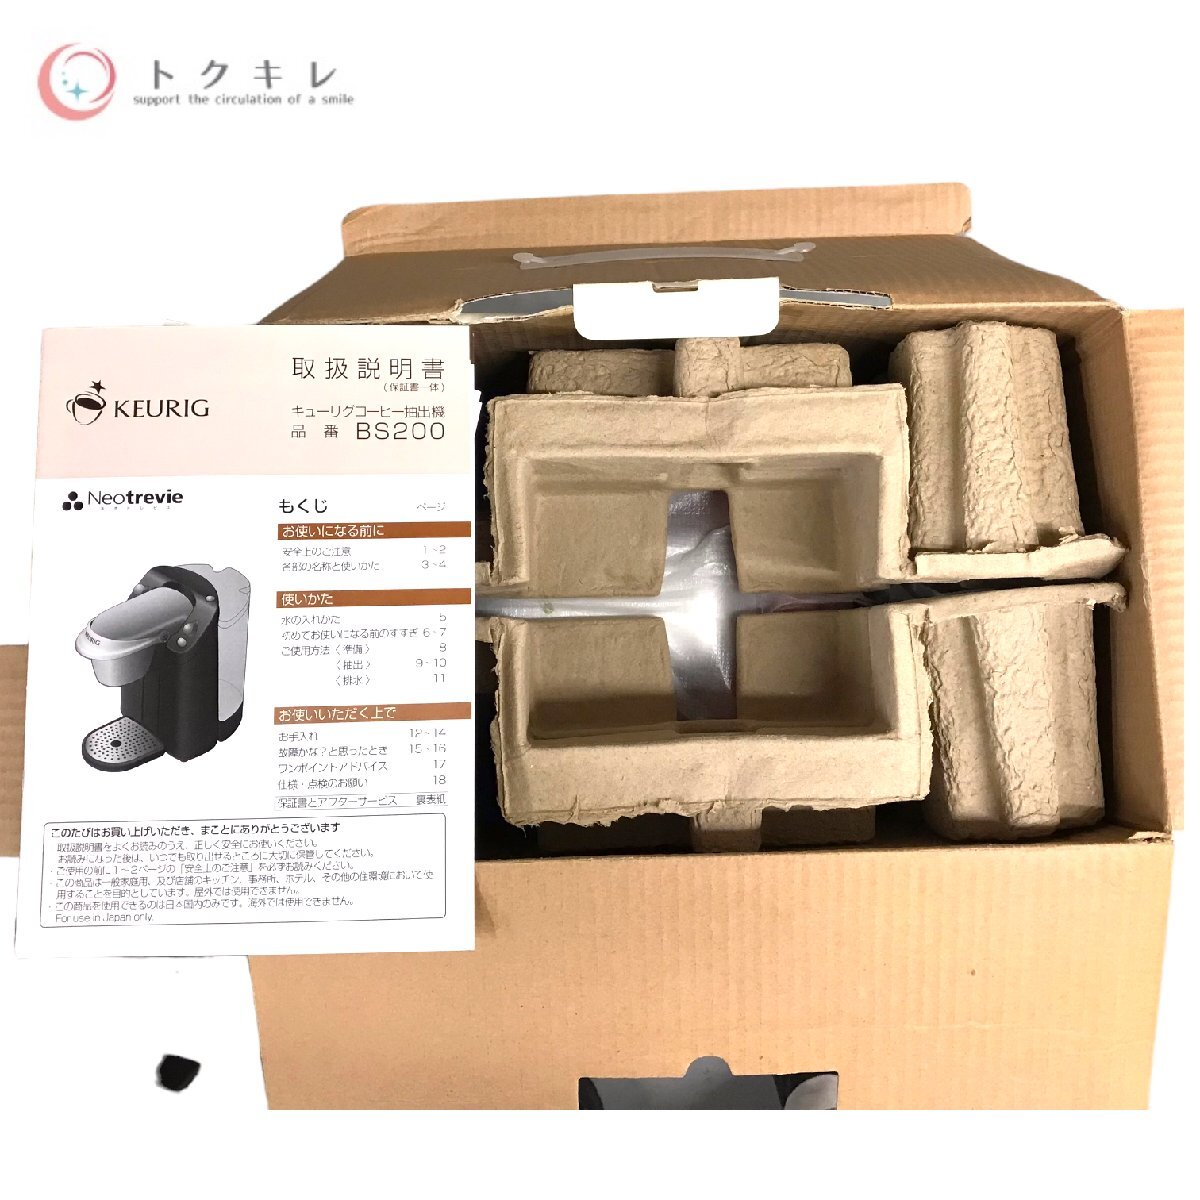 !1 иен старт бесплатная доставка смешанные товары товары для кухни бытовая техника много 8 позиций комплект Banko . "plasma cluster" система очищения воздуха ионами Dyson Eara pBUFFALO DTV-S110 перепродажа .